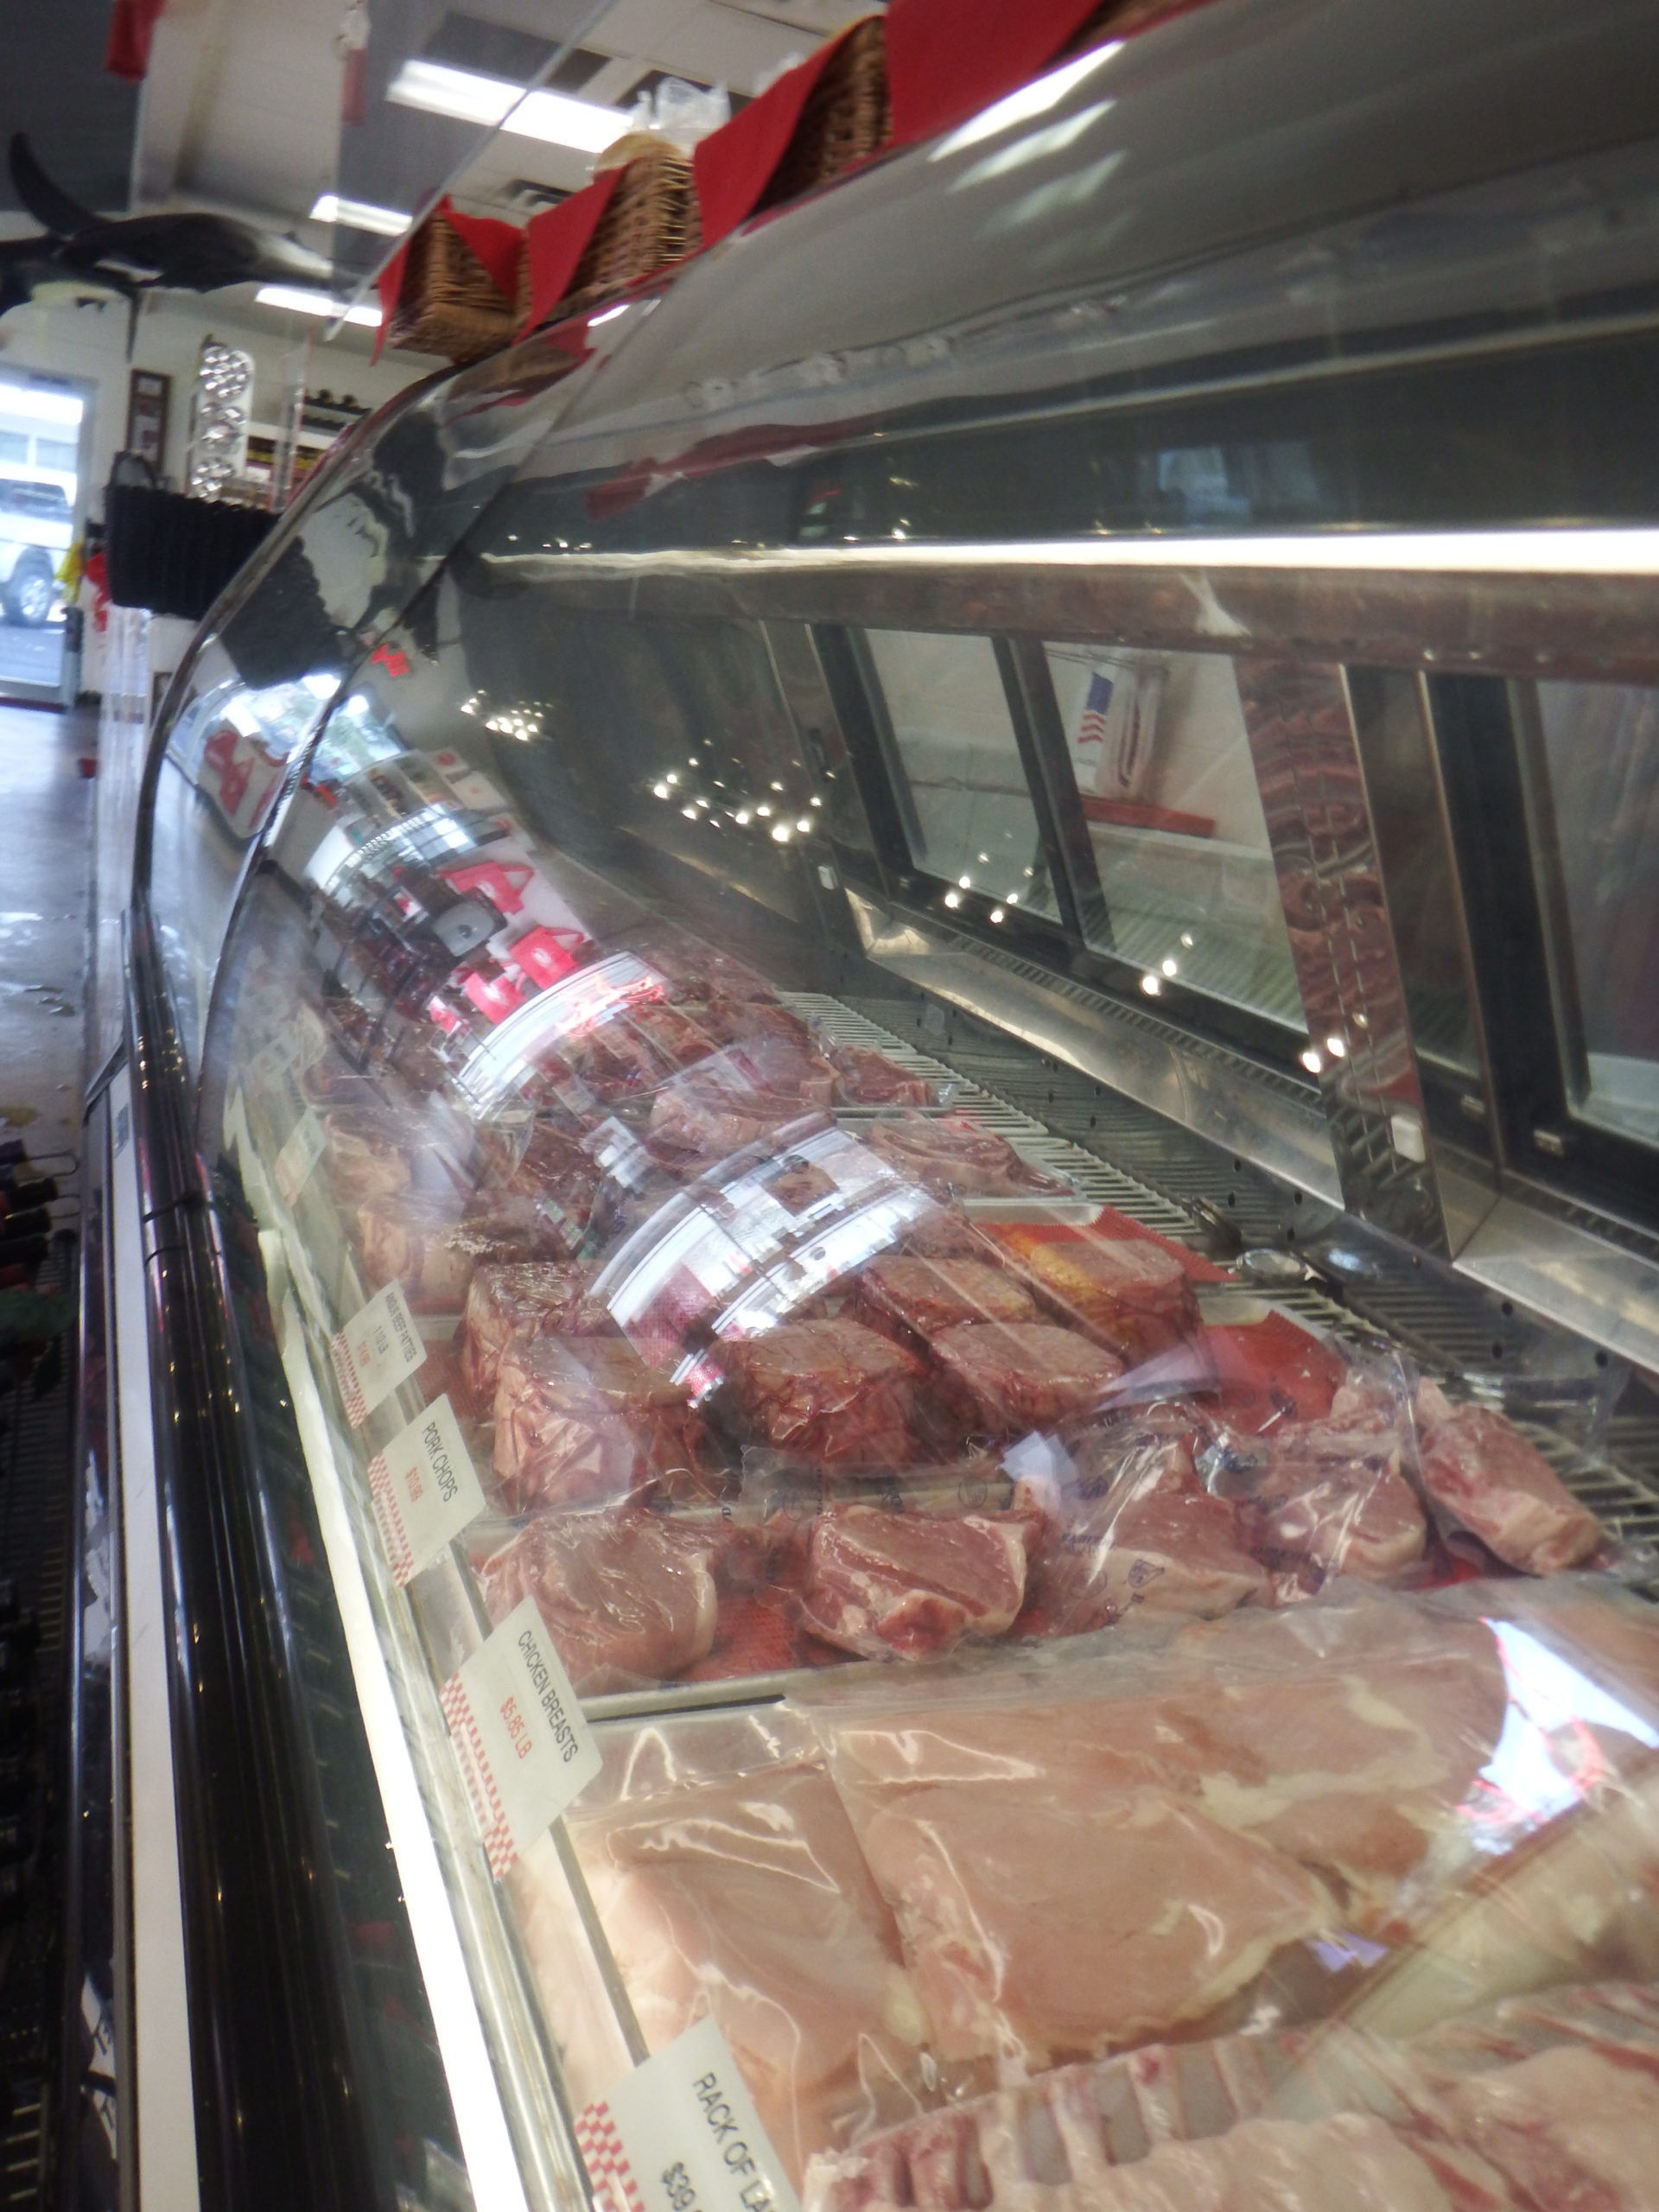 beef, pork and chicken in refrigerator at Destin Ice